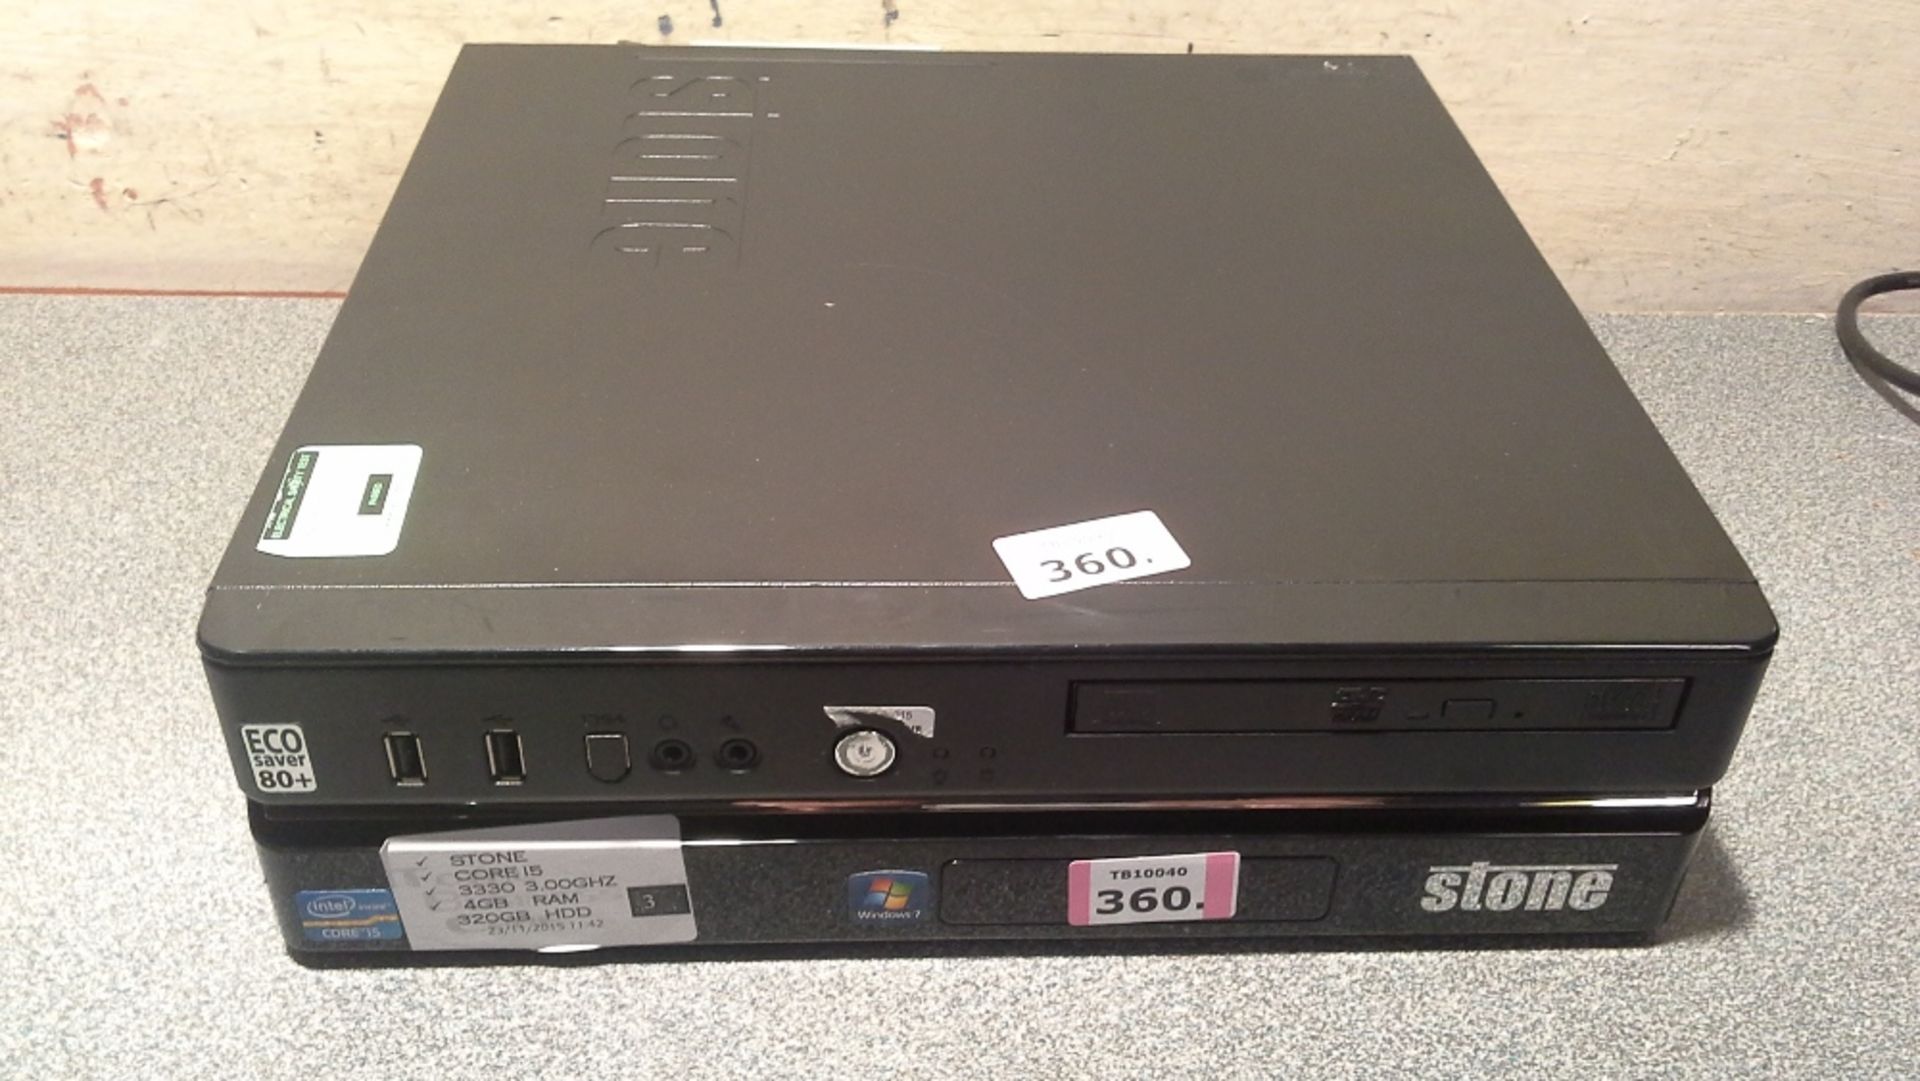 STONE  PC-1210 SFF Computer - Intel Core i5 3.10Ghz - 4GB Ram - 320GB Hdd - DVD-RW - Preinstalled